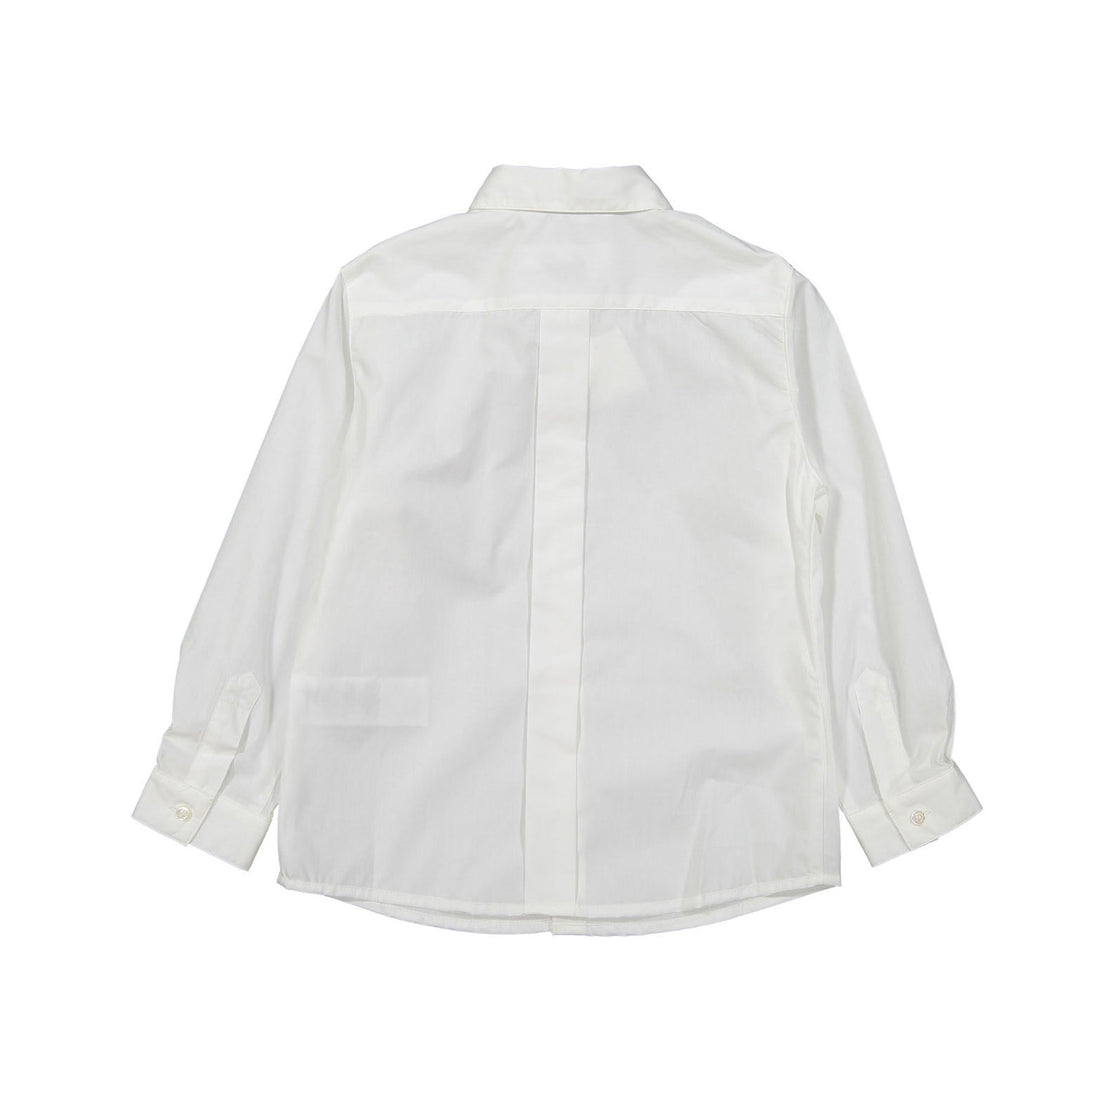 Bonpoint White Classic Acteur Shirt